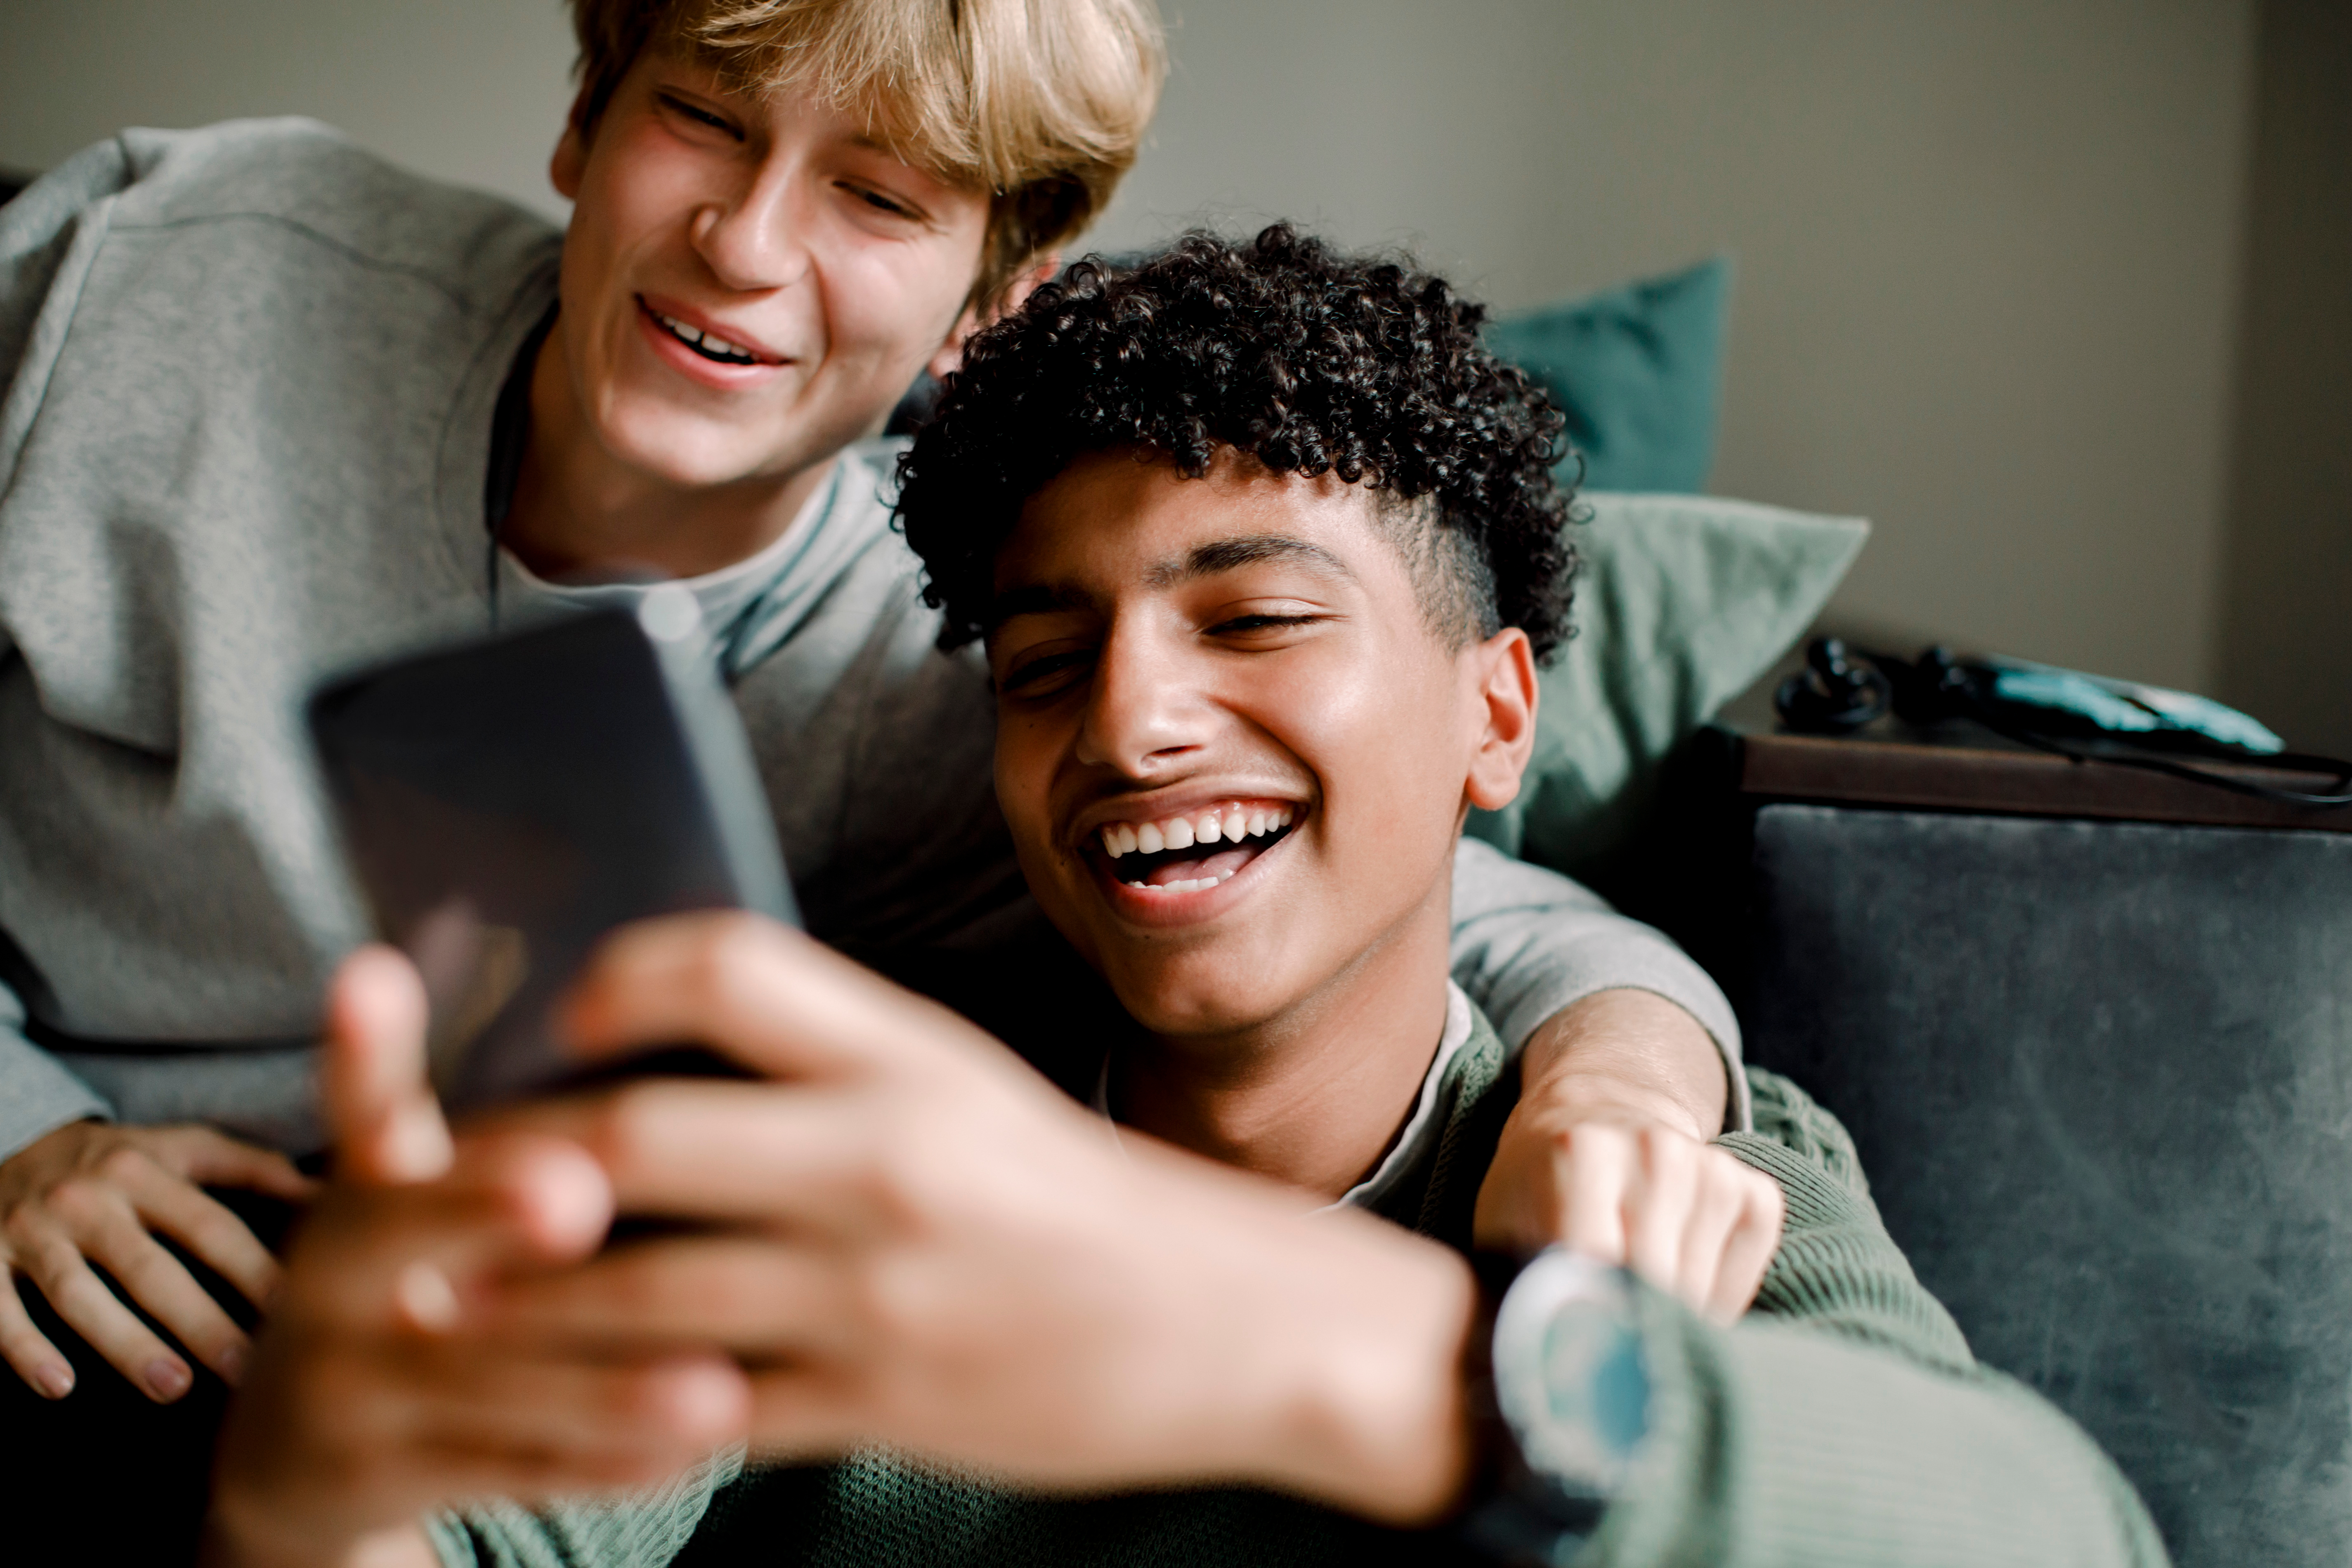 Annonsering på Snapchat: Engasjer med en ung og aktiv målgruppe